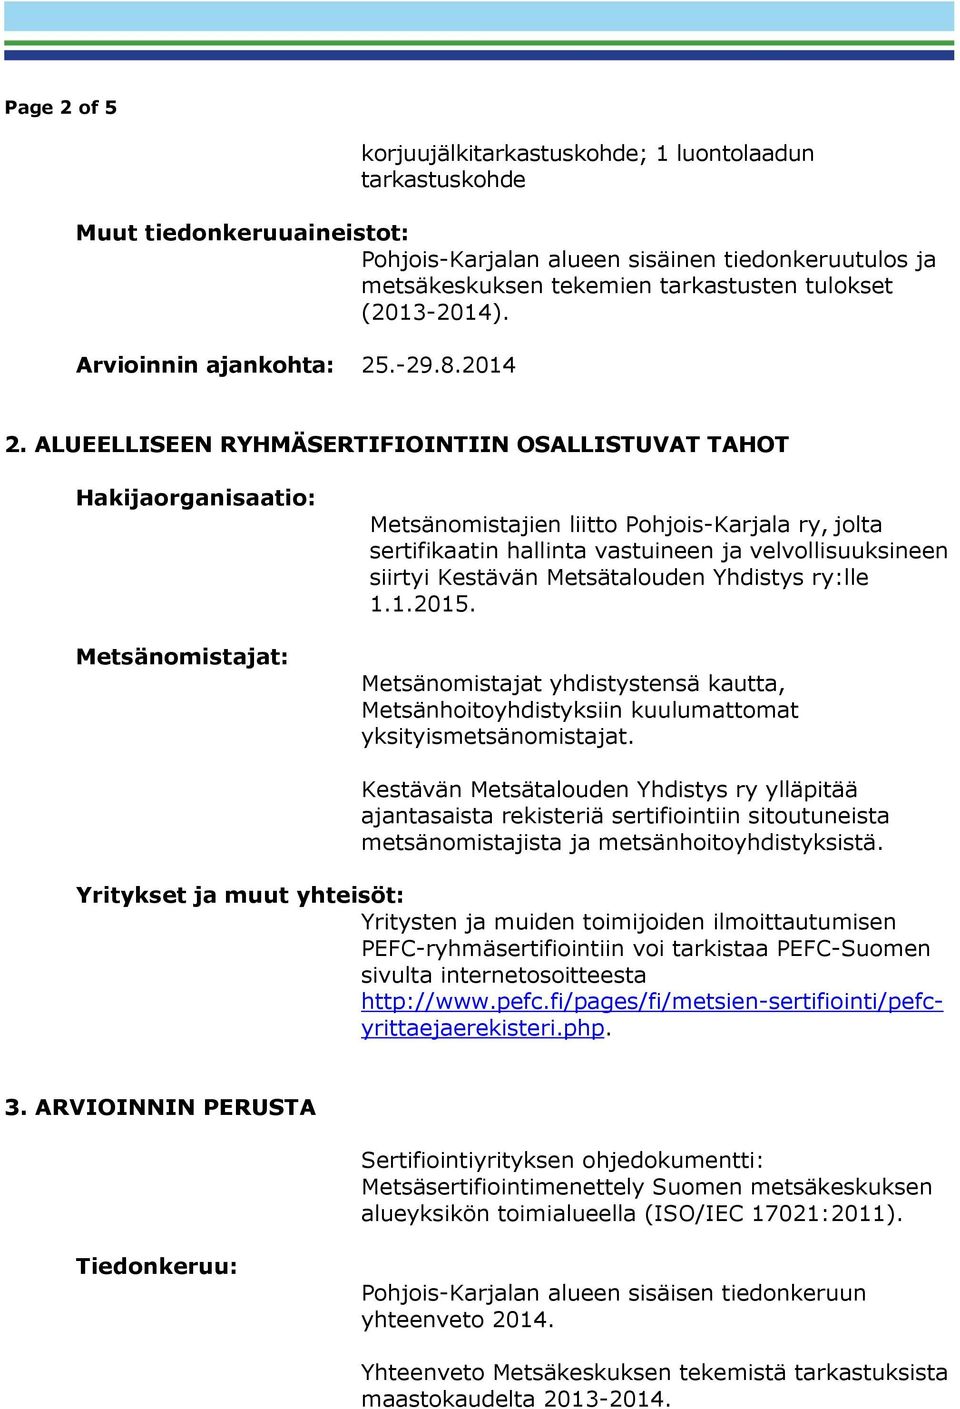 ALUEELLISEEN RYHMÄSERTIFIOINTIIN OSALLISTUVAT TAHOT Hakijaorganisaatio: Metsänomistajat: Metsänomistajien liitto Pohjois-Karjala ry, jolta sertifikaatin hallinta vastuineen ja velvollisuuksineen